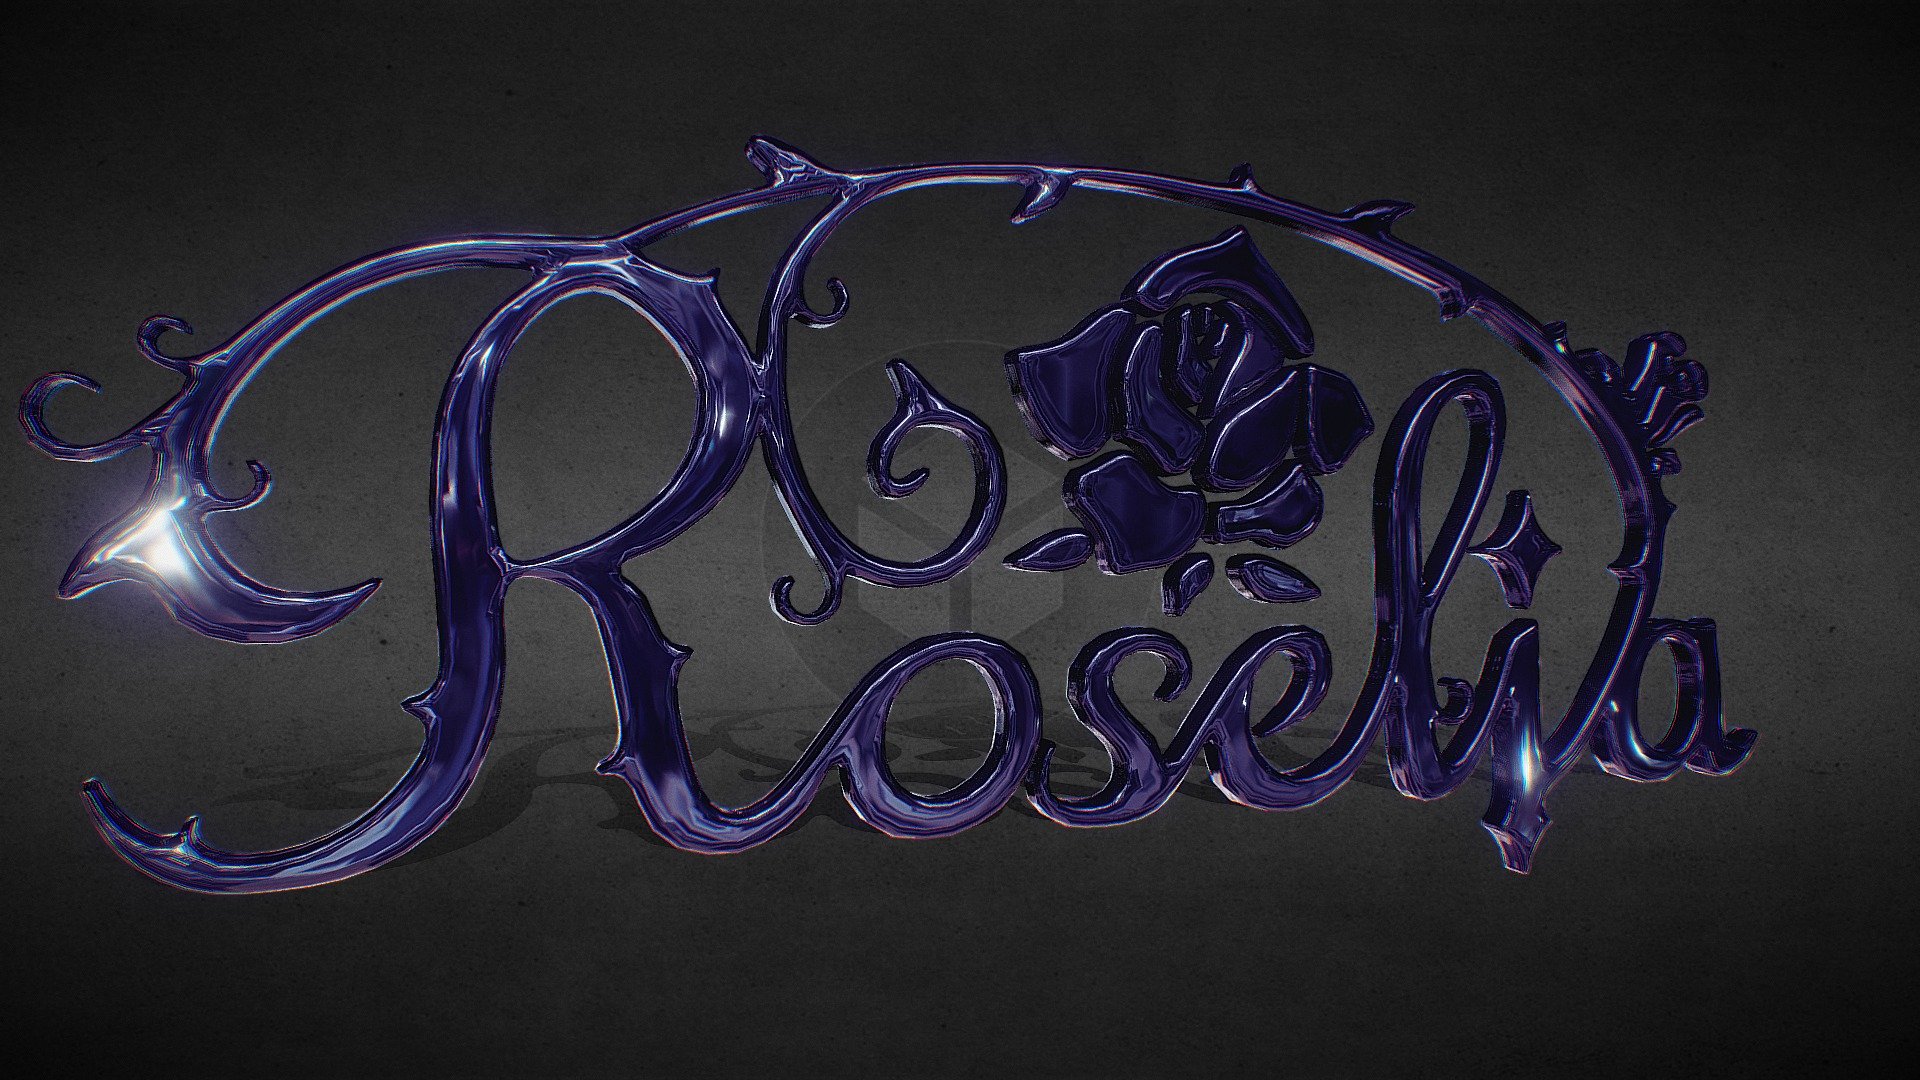 Roselia Fan Art - 3D Logo